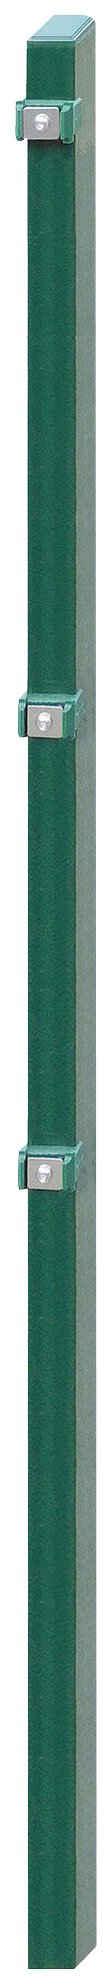 Arvotec Zaunpfosten EXCLUSIVE 120, 6x4x180 cm für Mattenhöhe 120 cm, zum Einbetonieren